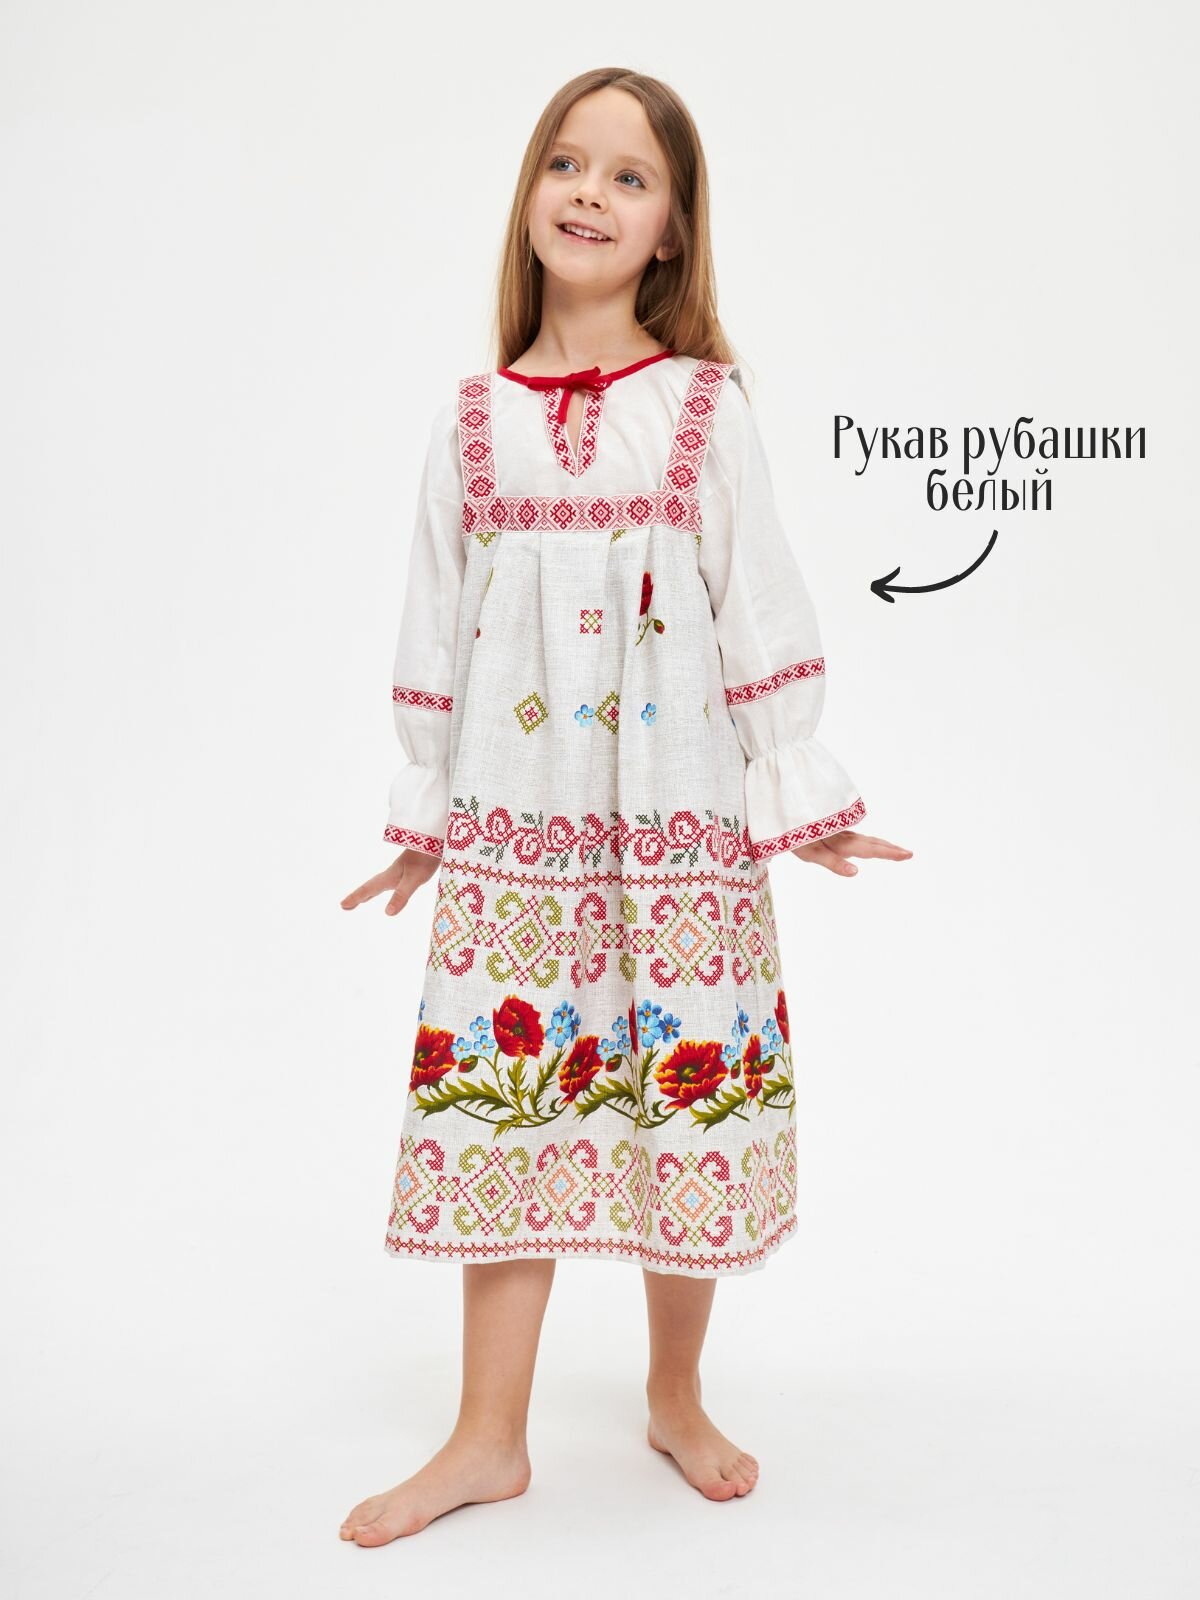 Русский народный костюм сарафан и рубашка Маки